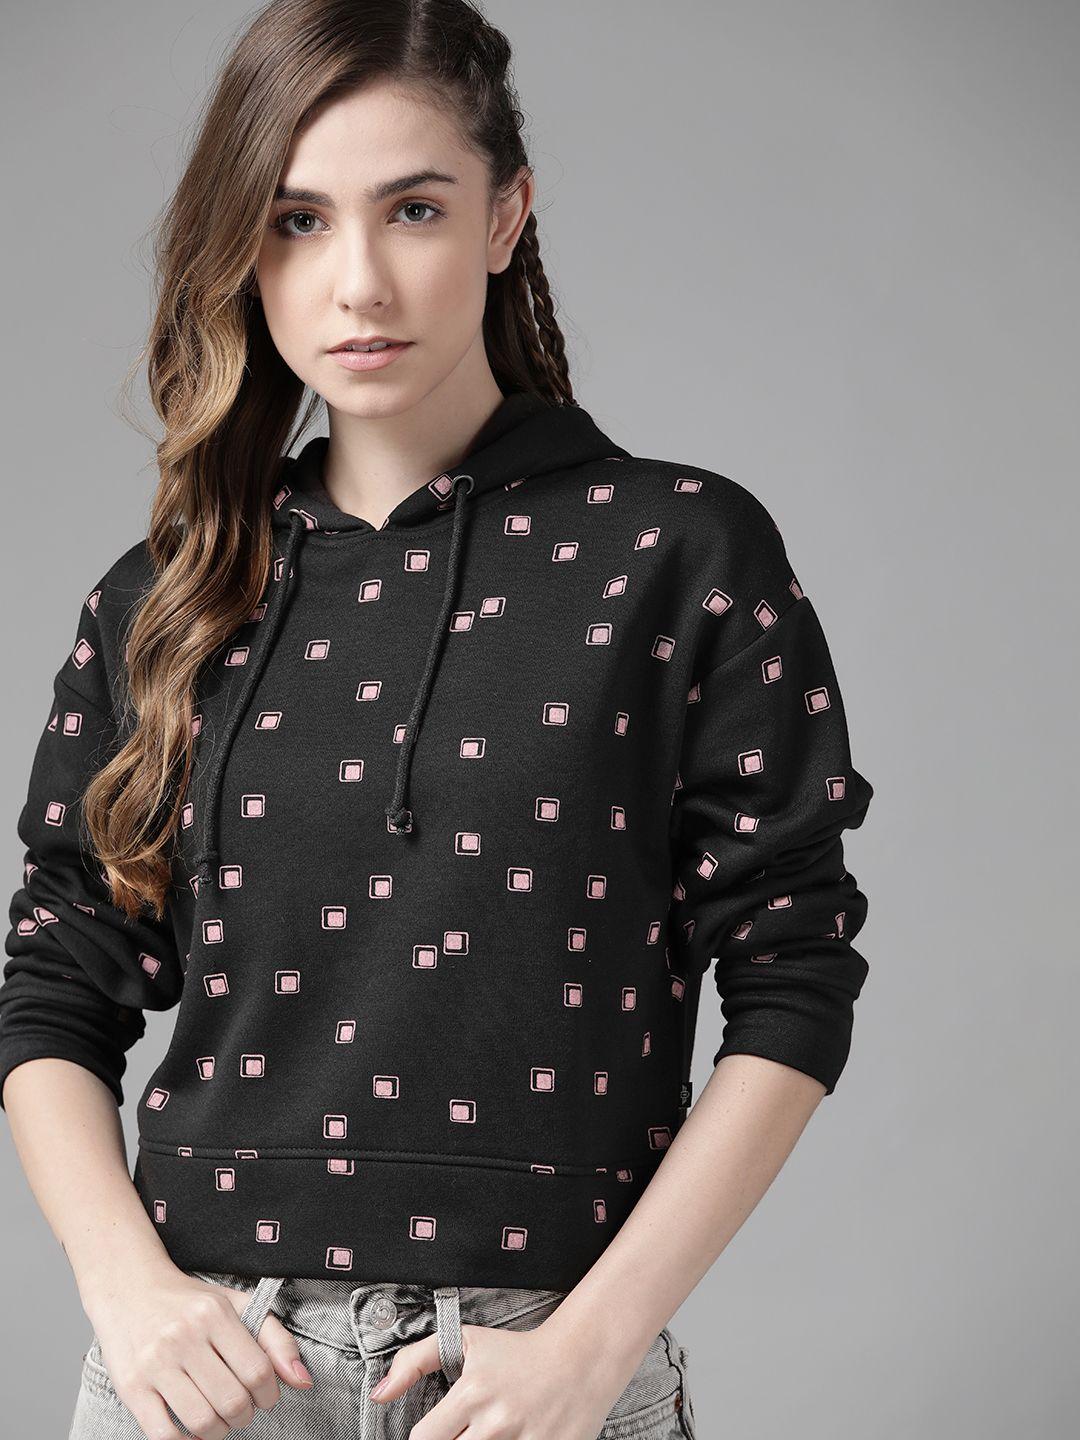 roadster women black & pink geometric printed hooded sweatshirt